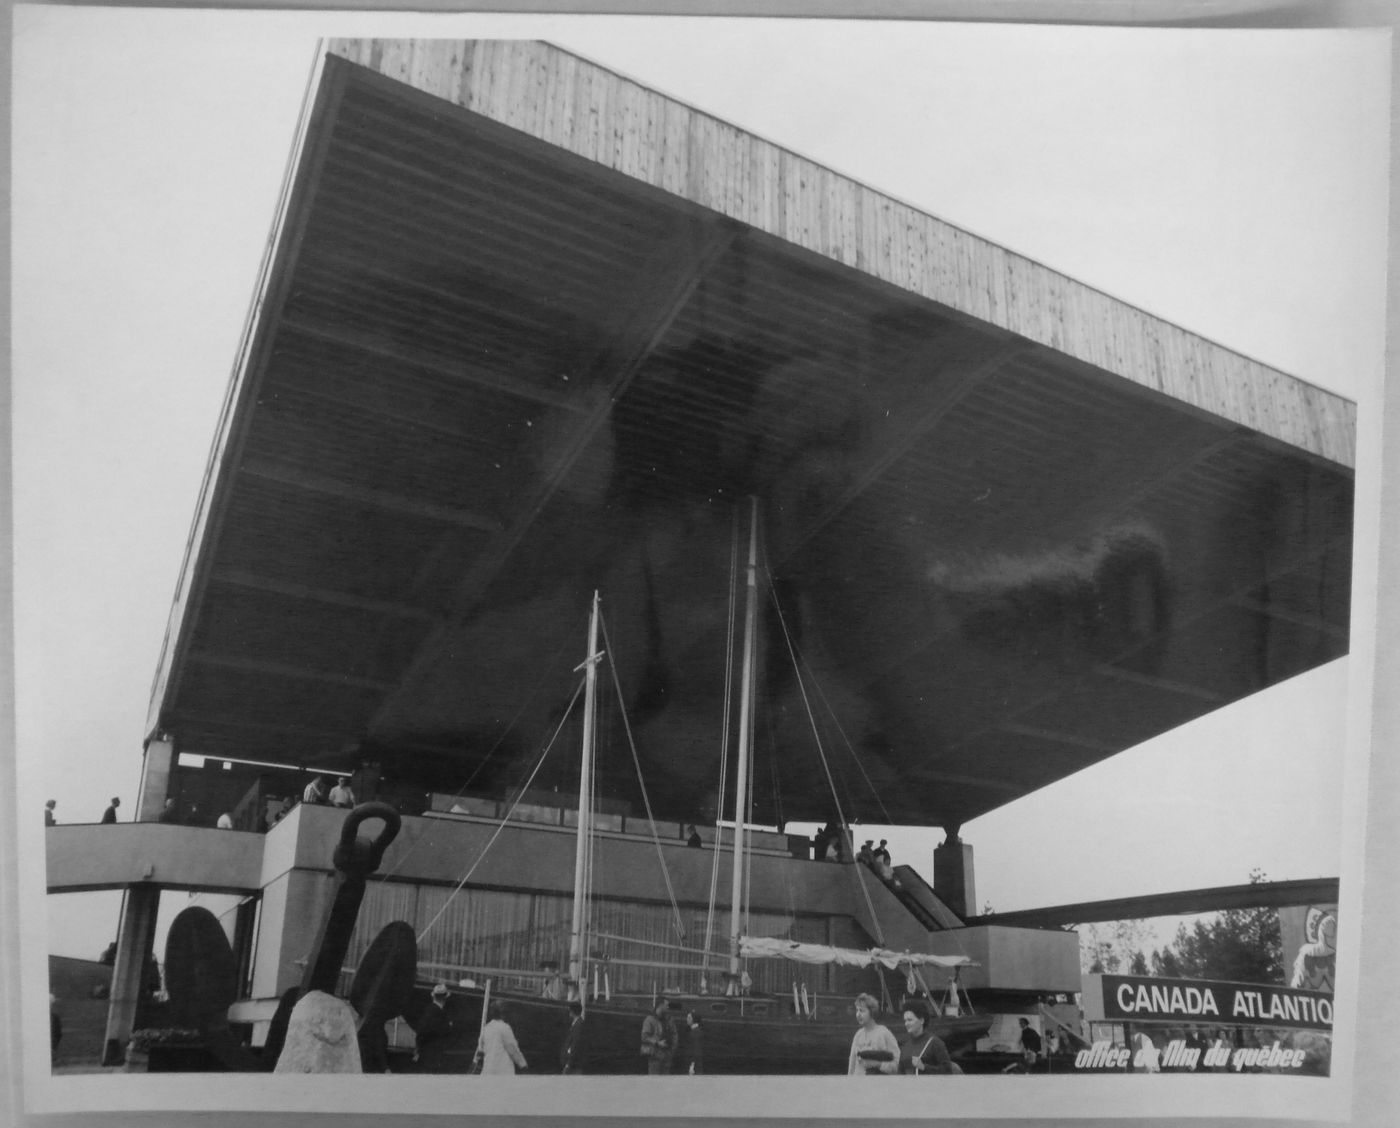 View of the Atlantic Provinces' Pavilion, Expo 67, Montréal, Québec